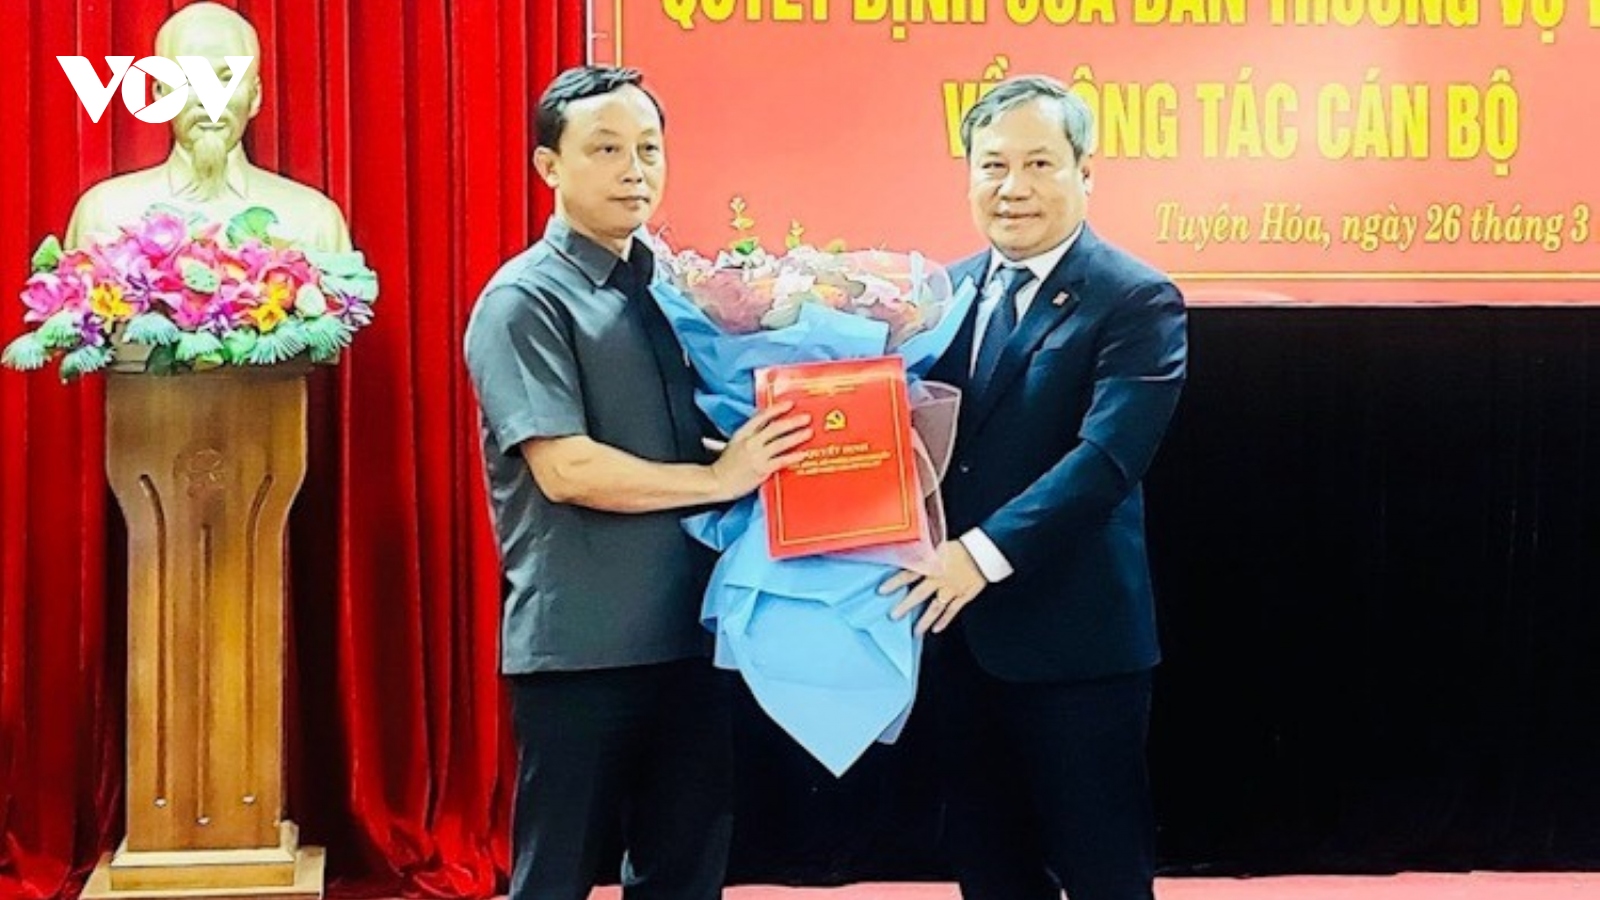 Quảng Bình: 2 giám đốc sở được điều động, bổ nhiệm làm bí thư huyện ủy